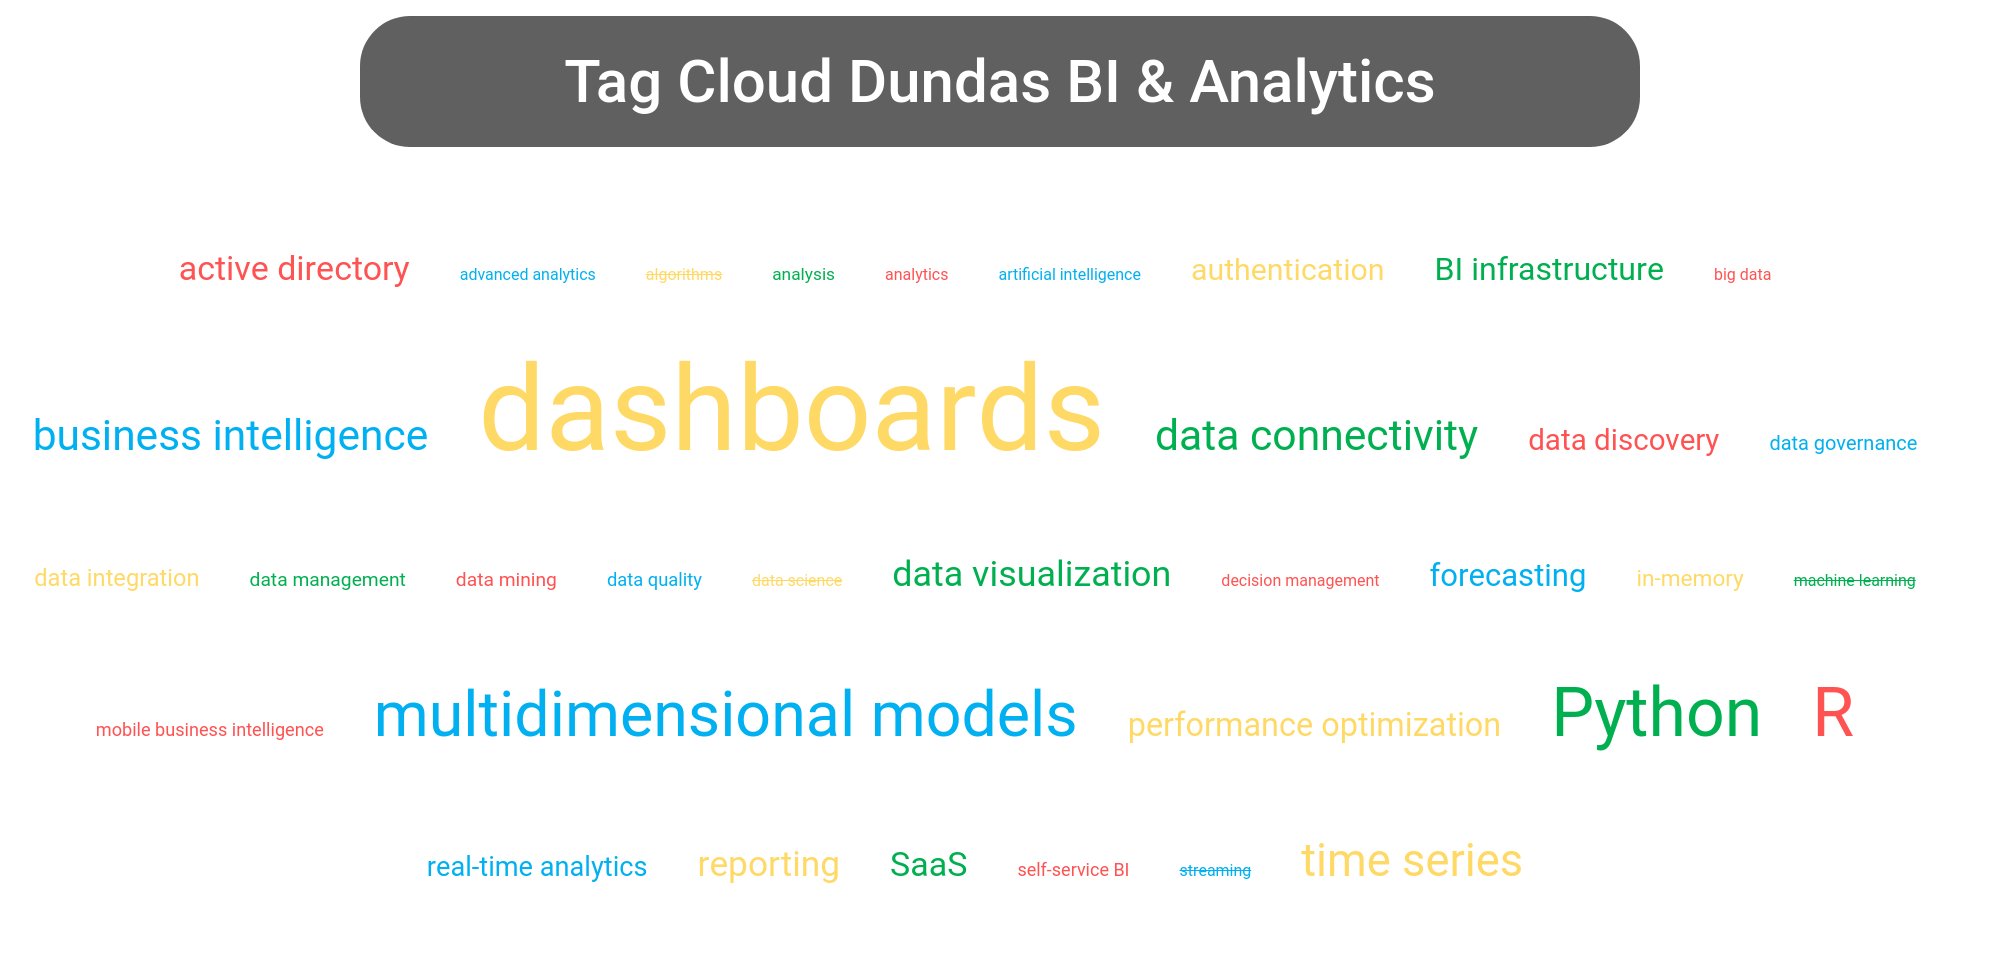 Tag cloud of the Dundas BI tools.